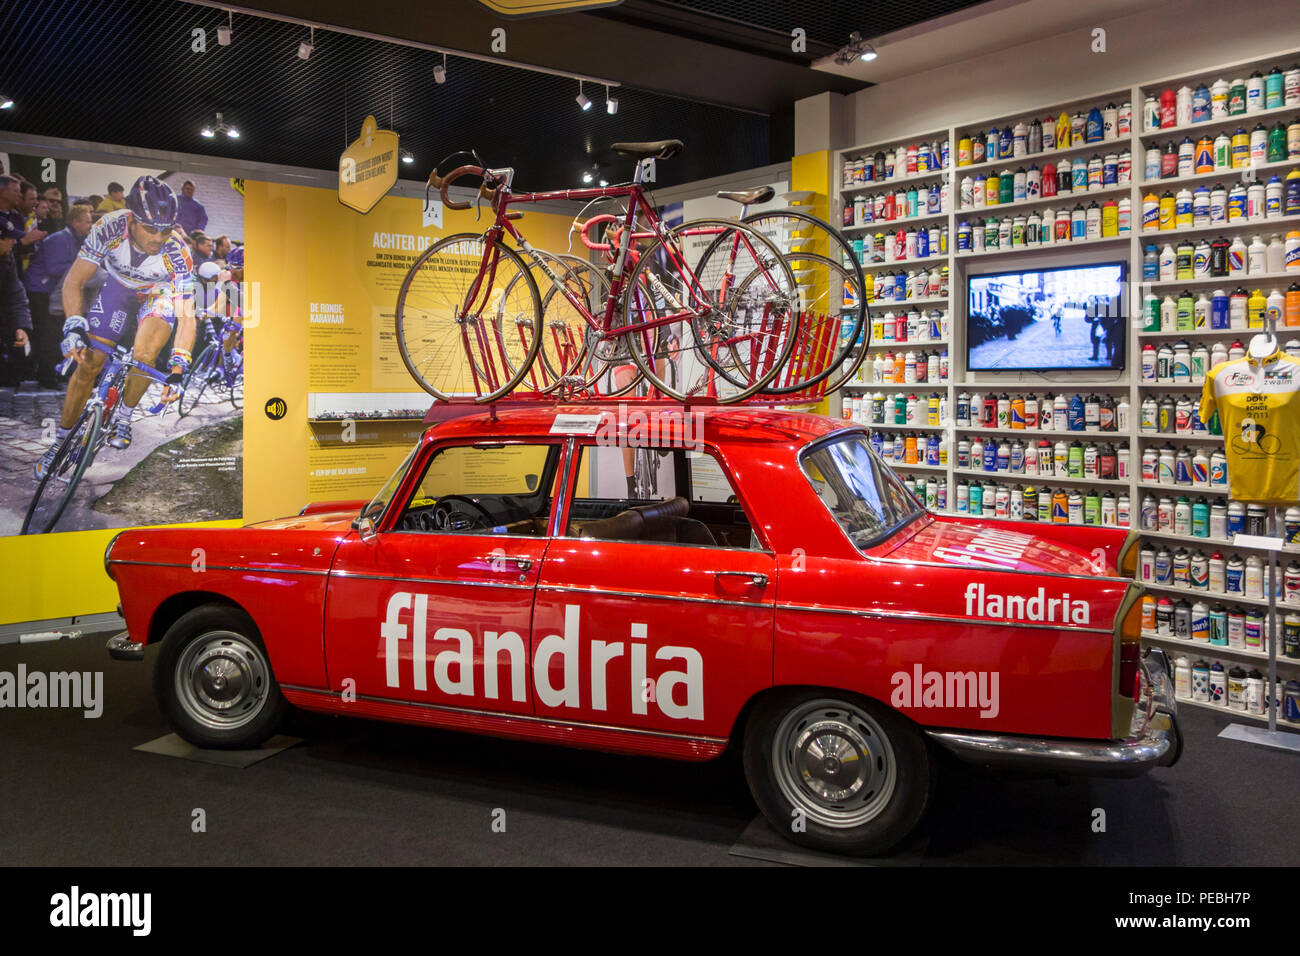 En el coche del equipo Flandria Centrum Ronde van Vlaanderen / Tour de Flandes Center, museo dedicado a Flandes, carreras de bicicletas de carretera, Oudenaarde, Bélgica Foto de stock